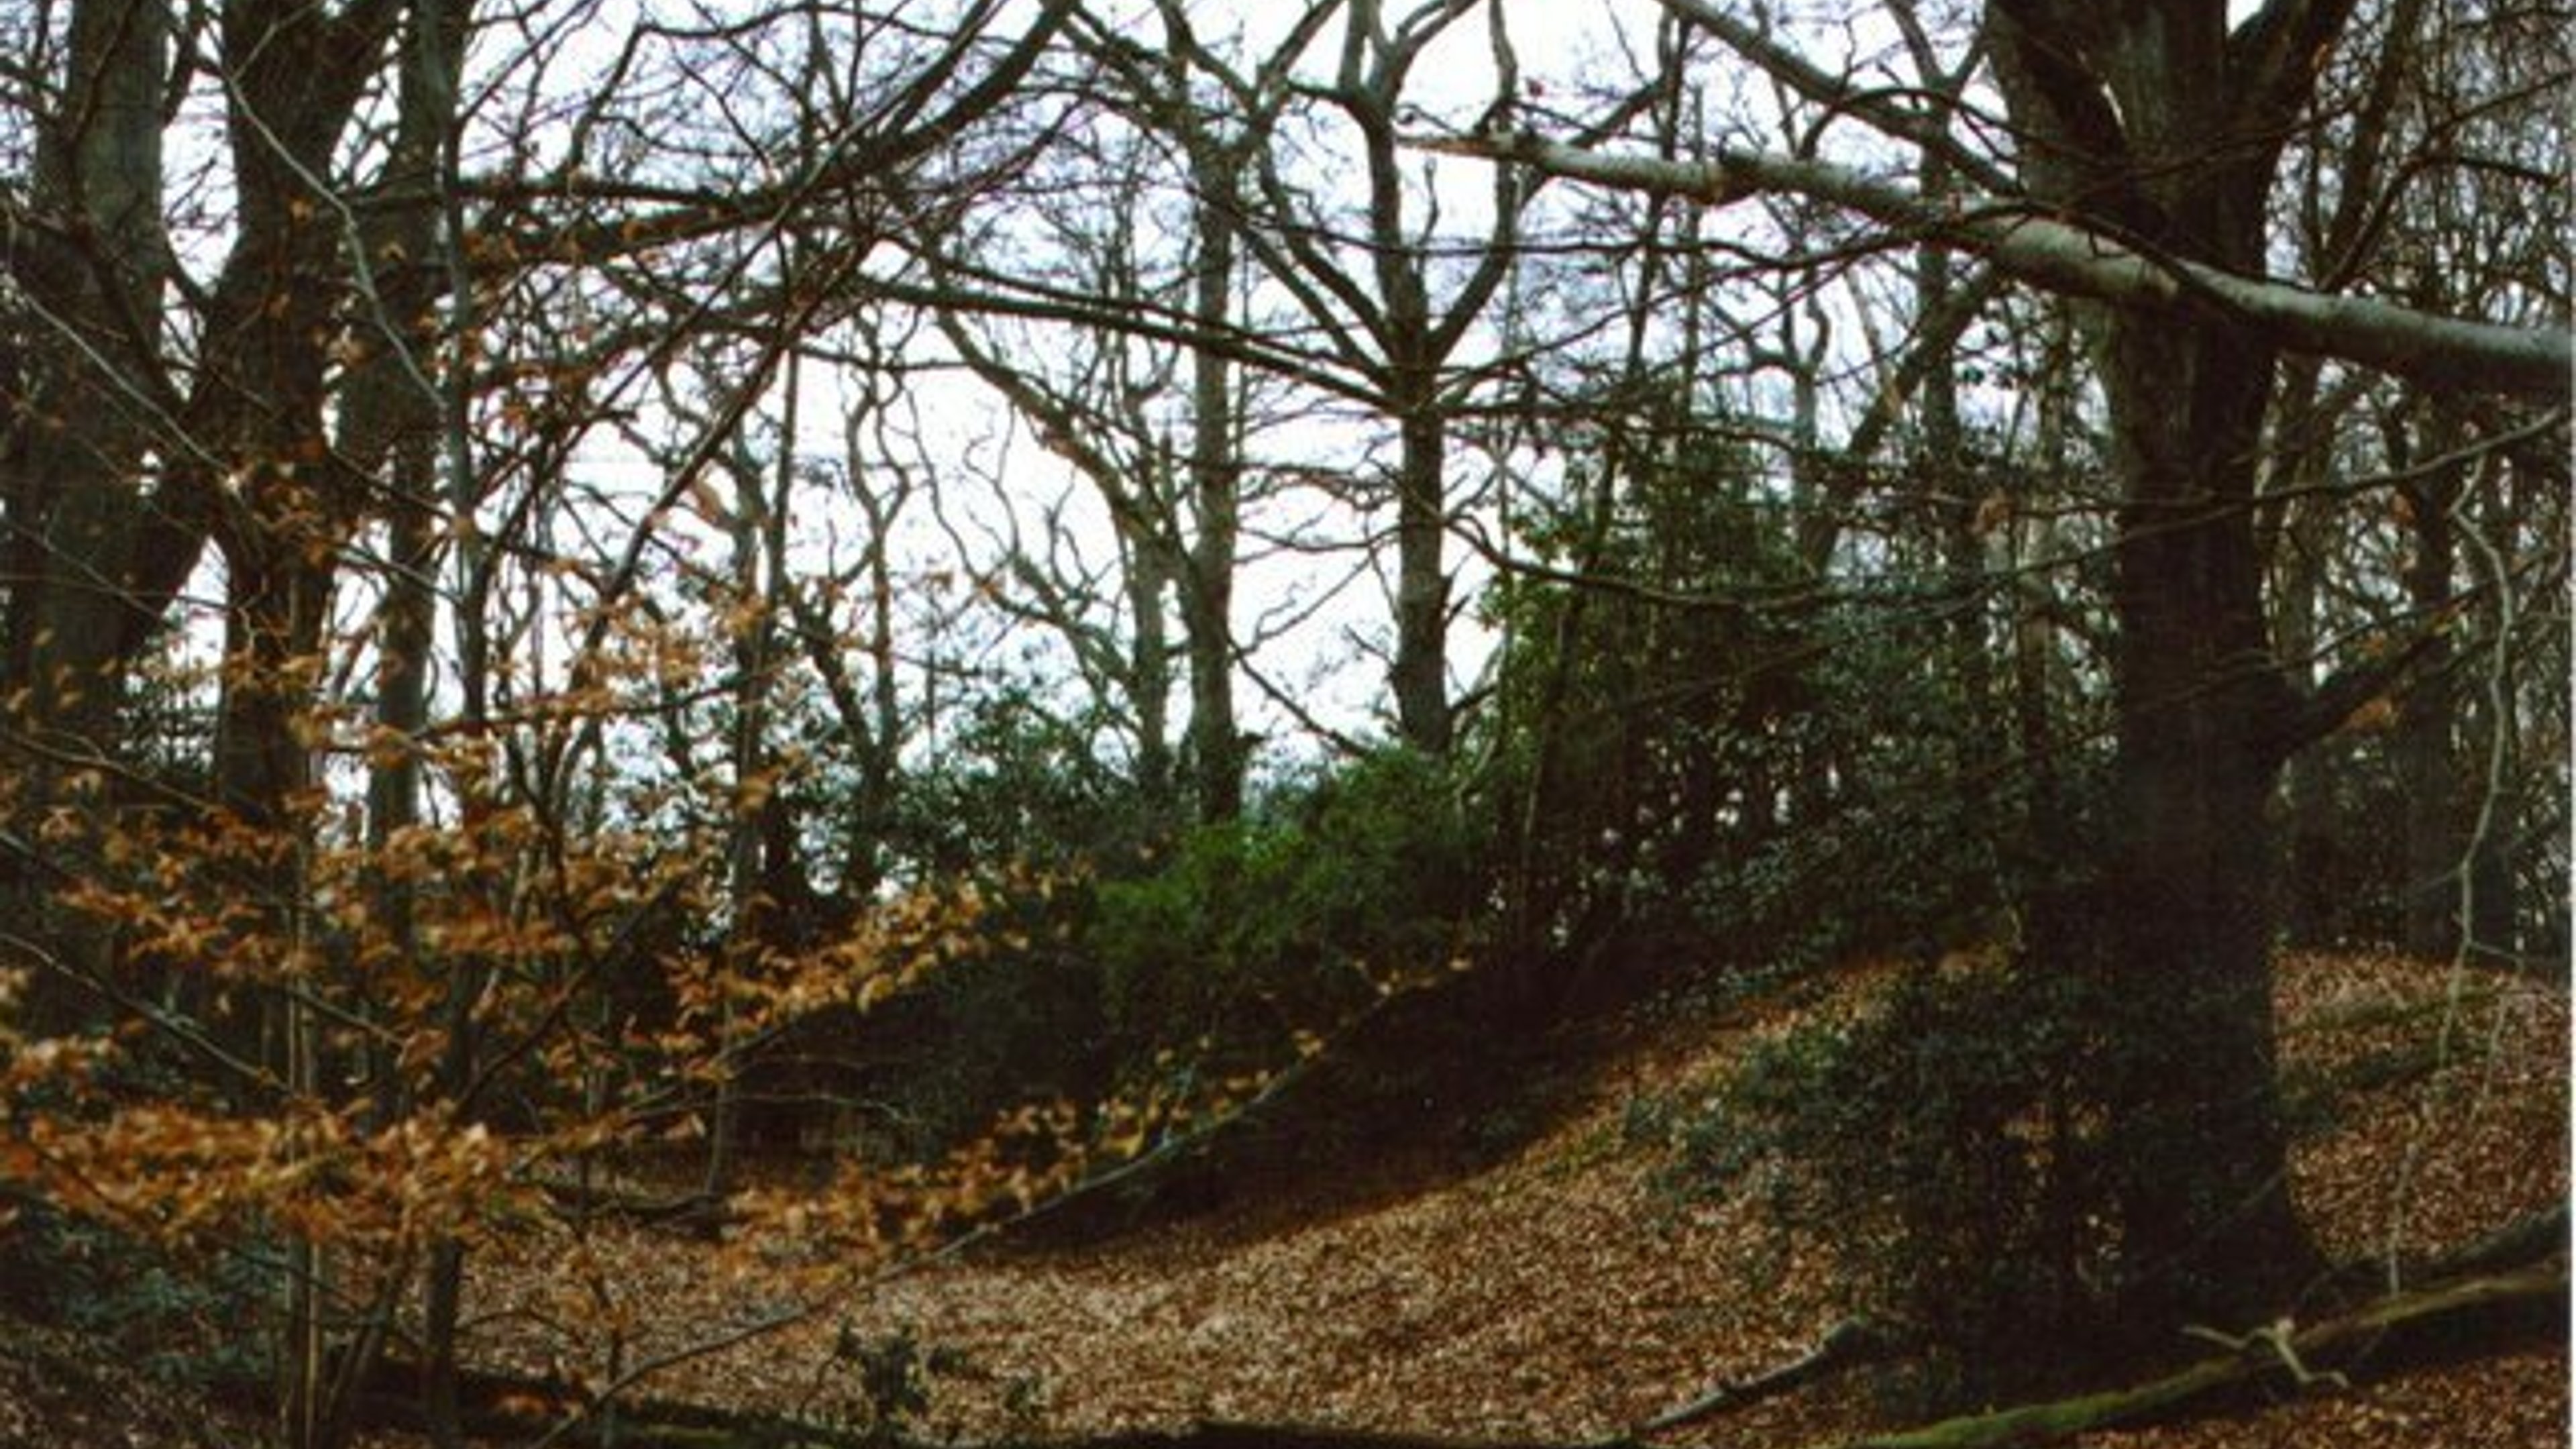 Grimsbury Castle - West Berkshire 3 Peaks Hiking Challenge